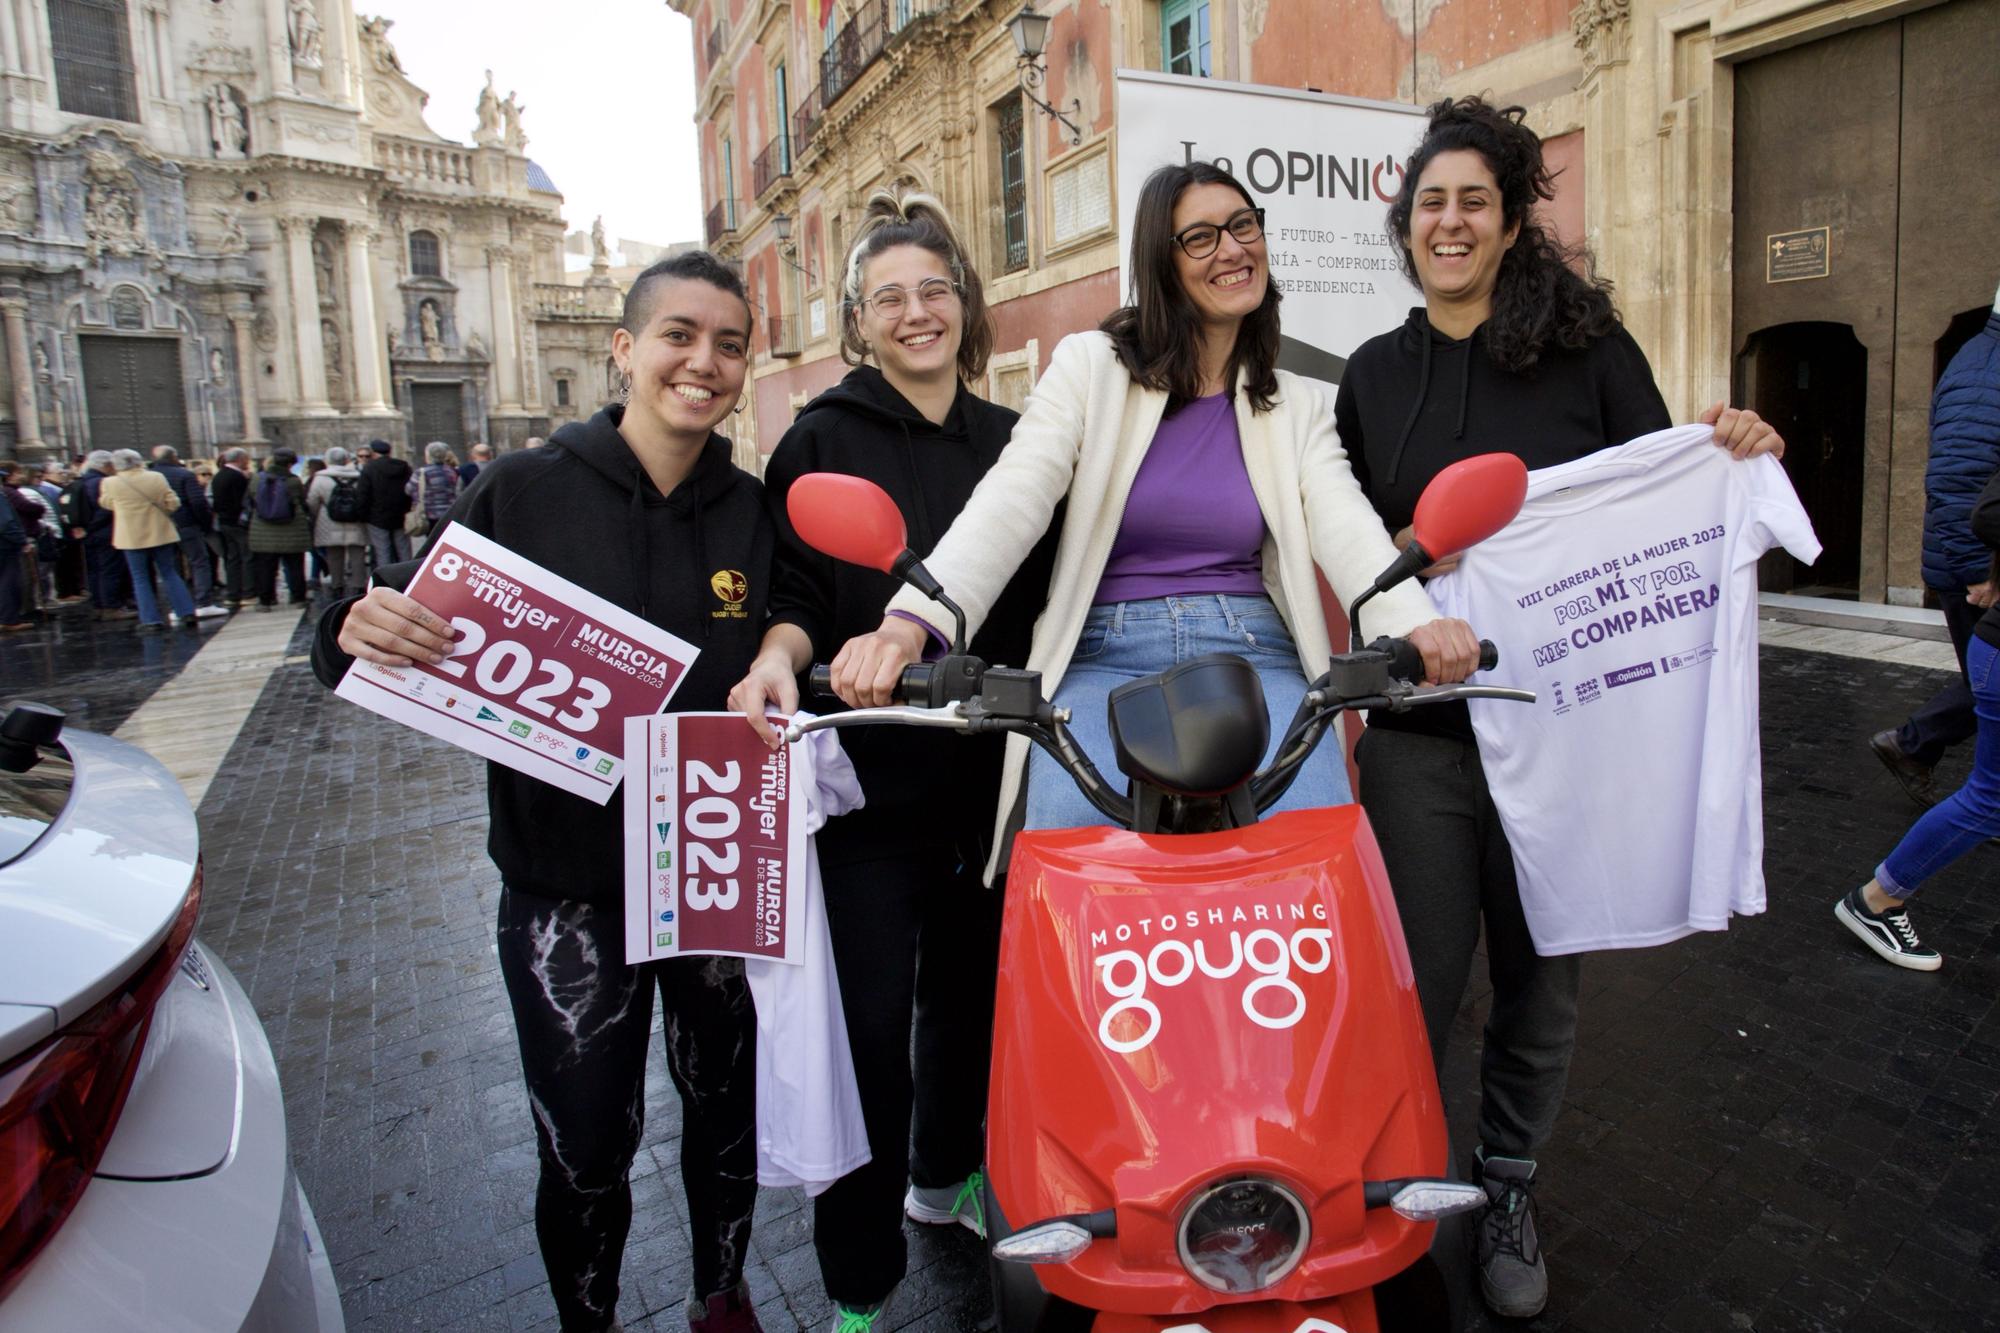 Presentación de la Carrera de la Mujer en Murcia 2023